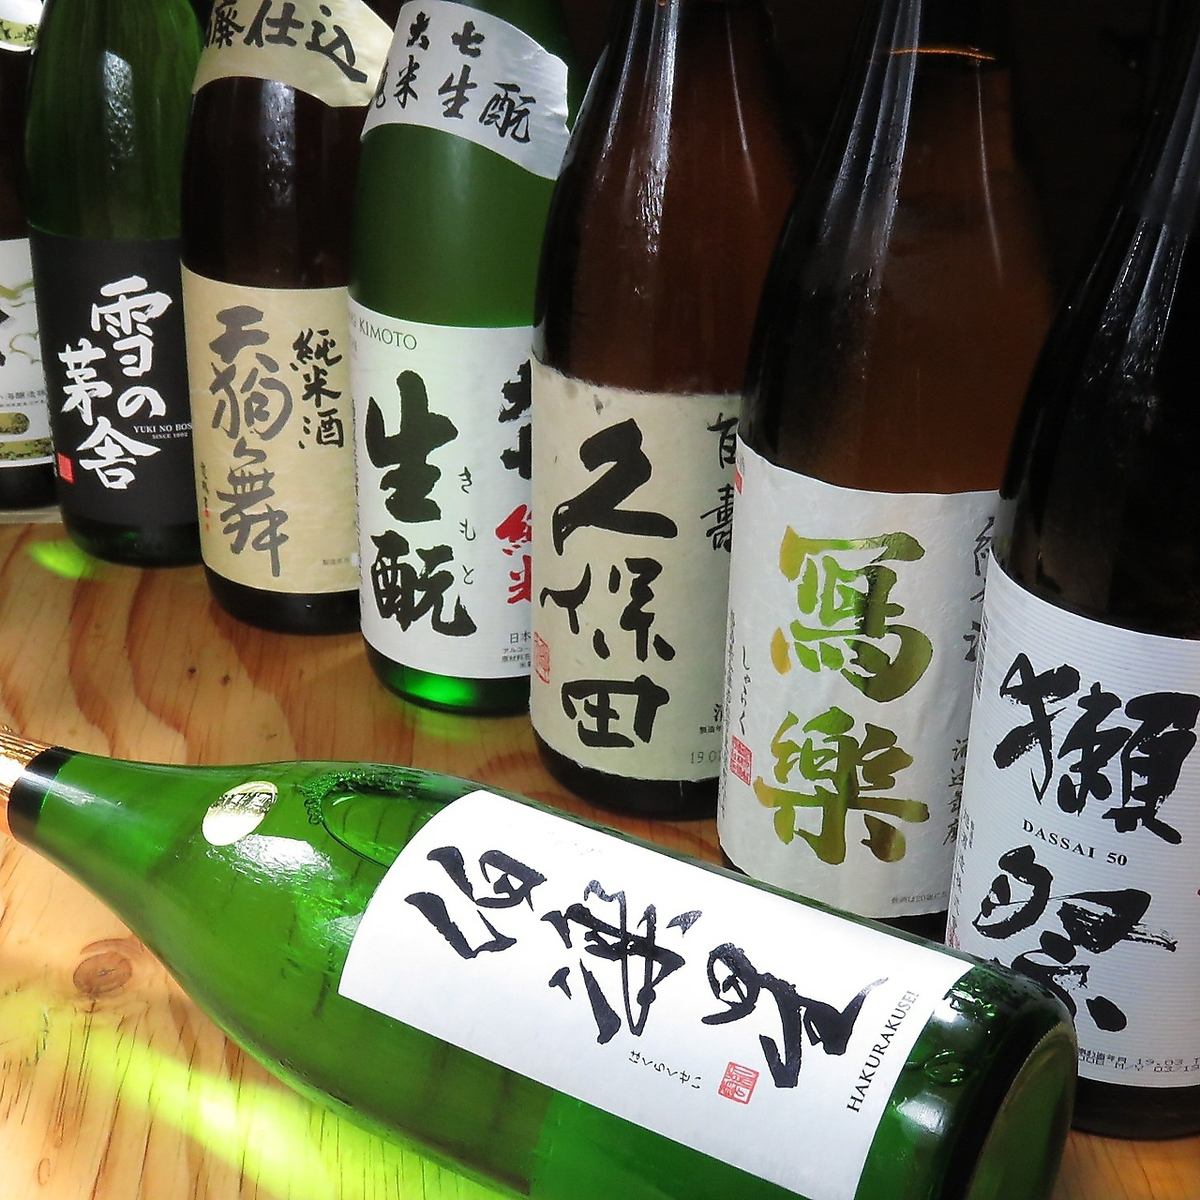 Dassai、Hakurakusei、Shagaraku等，我们有约30种清酒可供选择！